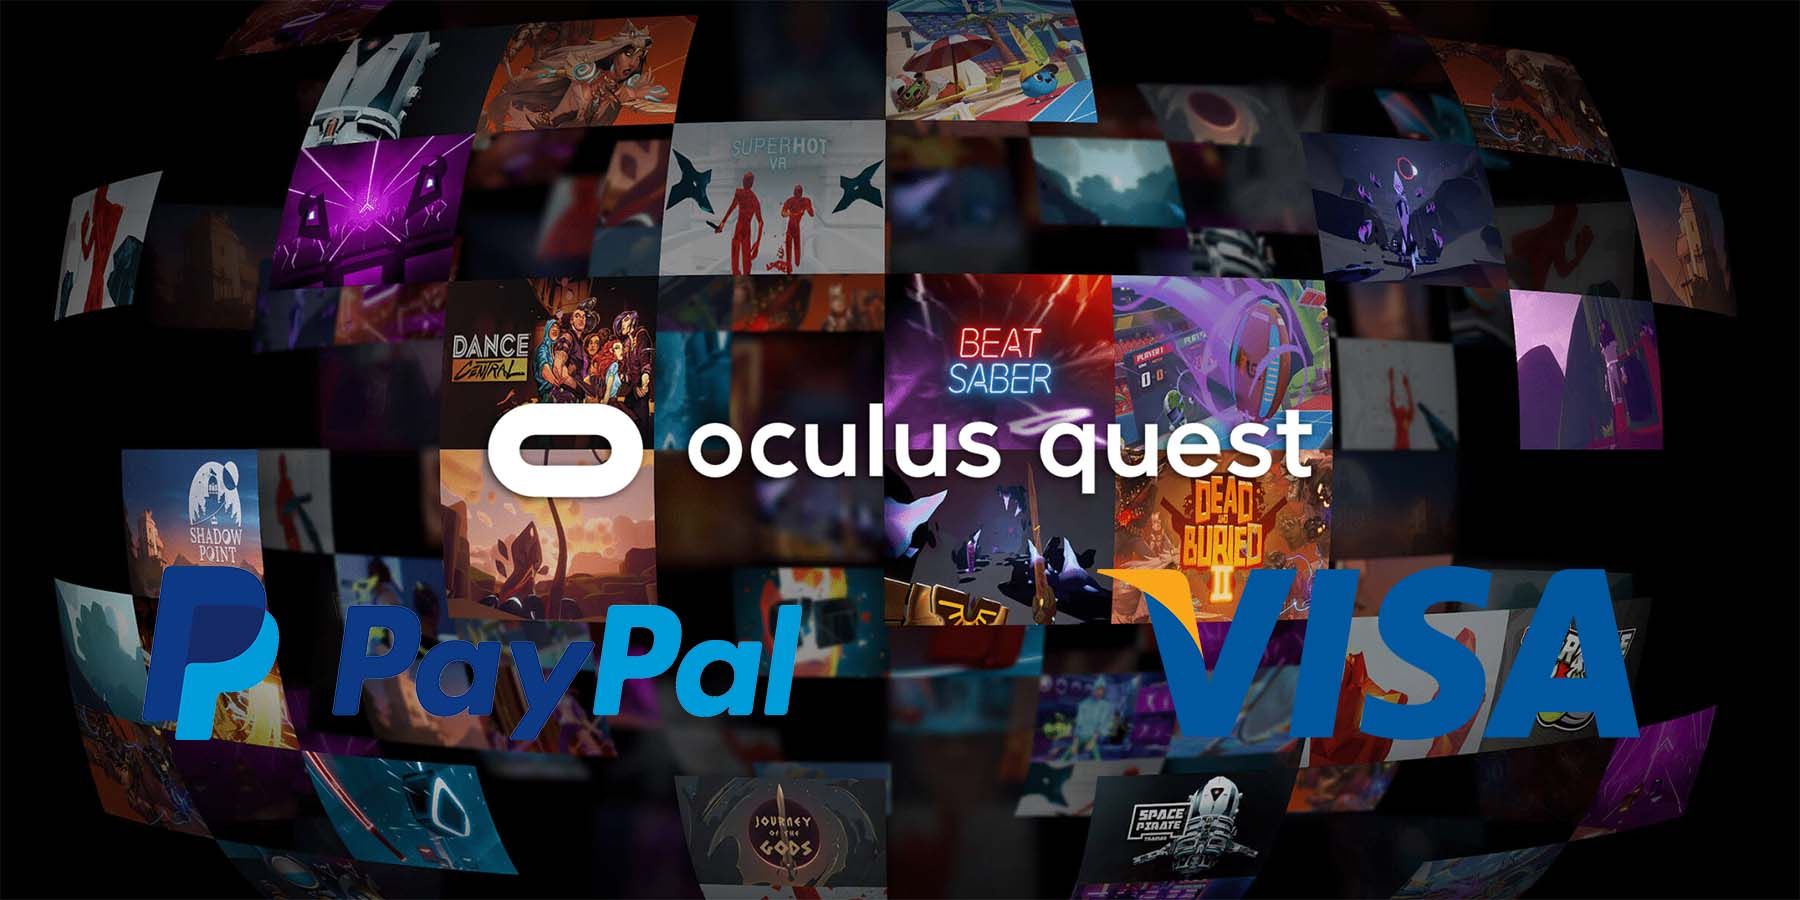 Oculus quest 2 ошибки. Окулус квест 2 коробка. Oculus Quest 2 PNG. Код Окулус квест 2. Oculus Quest обновление по 62 версия.